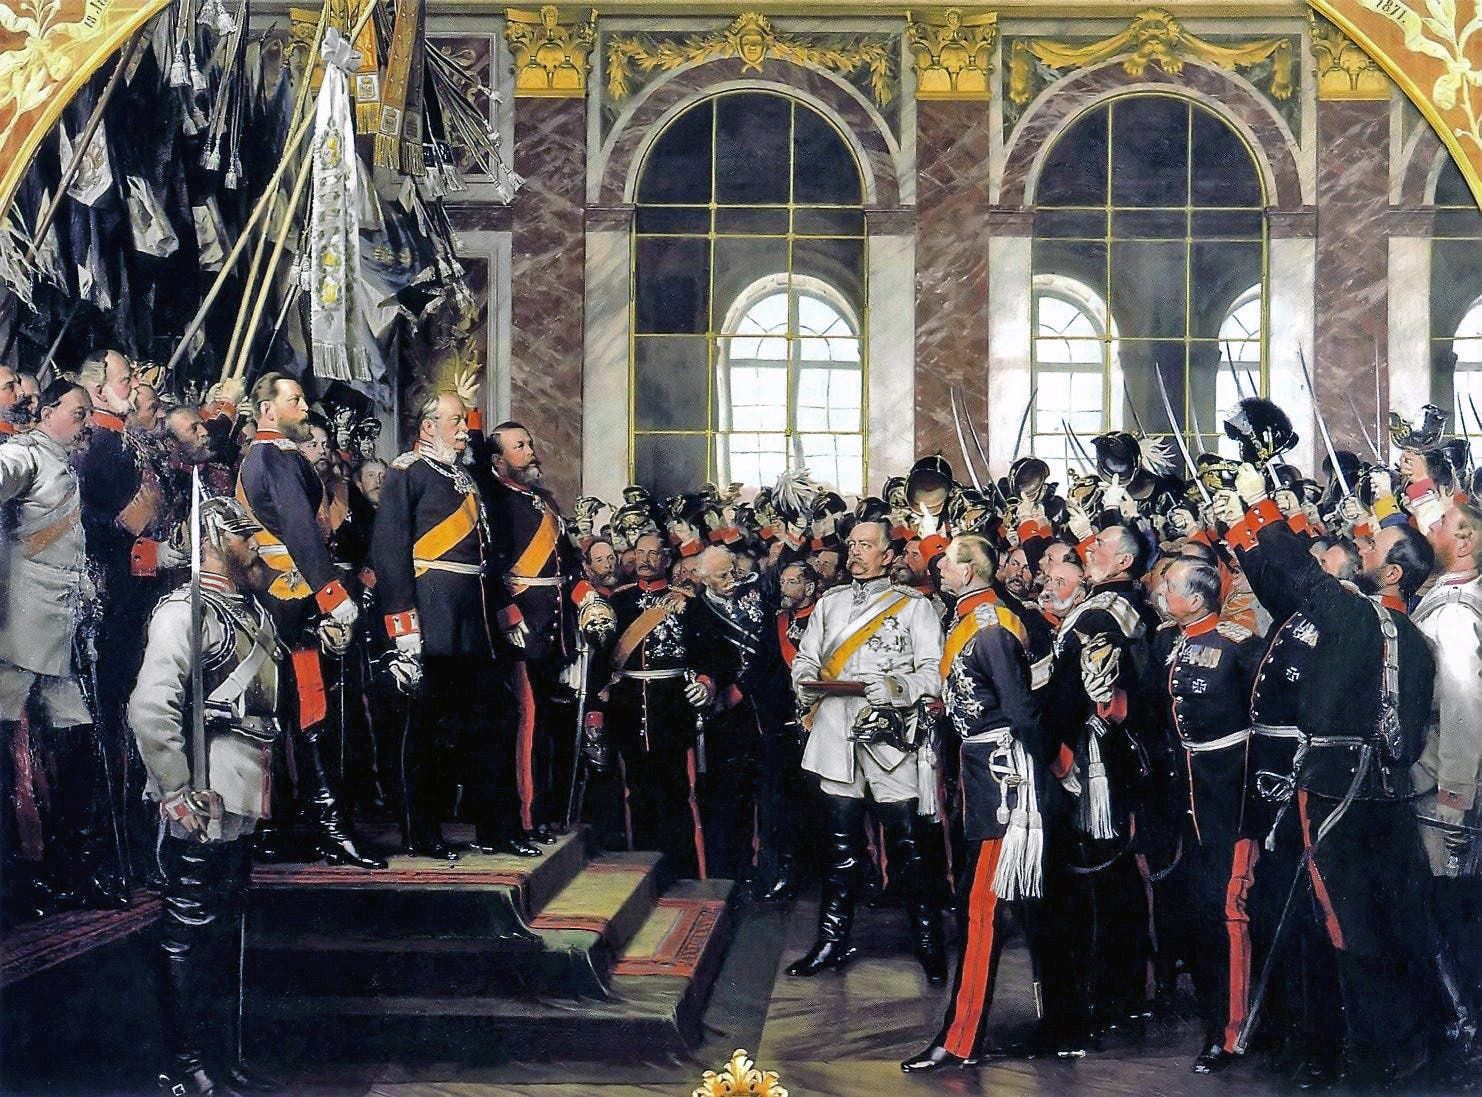 لوحة تجسد اعلان الوحدة الألمانية عام 1871